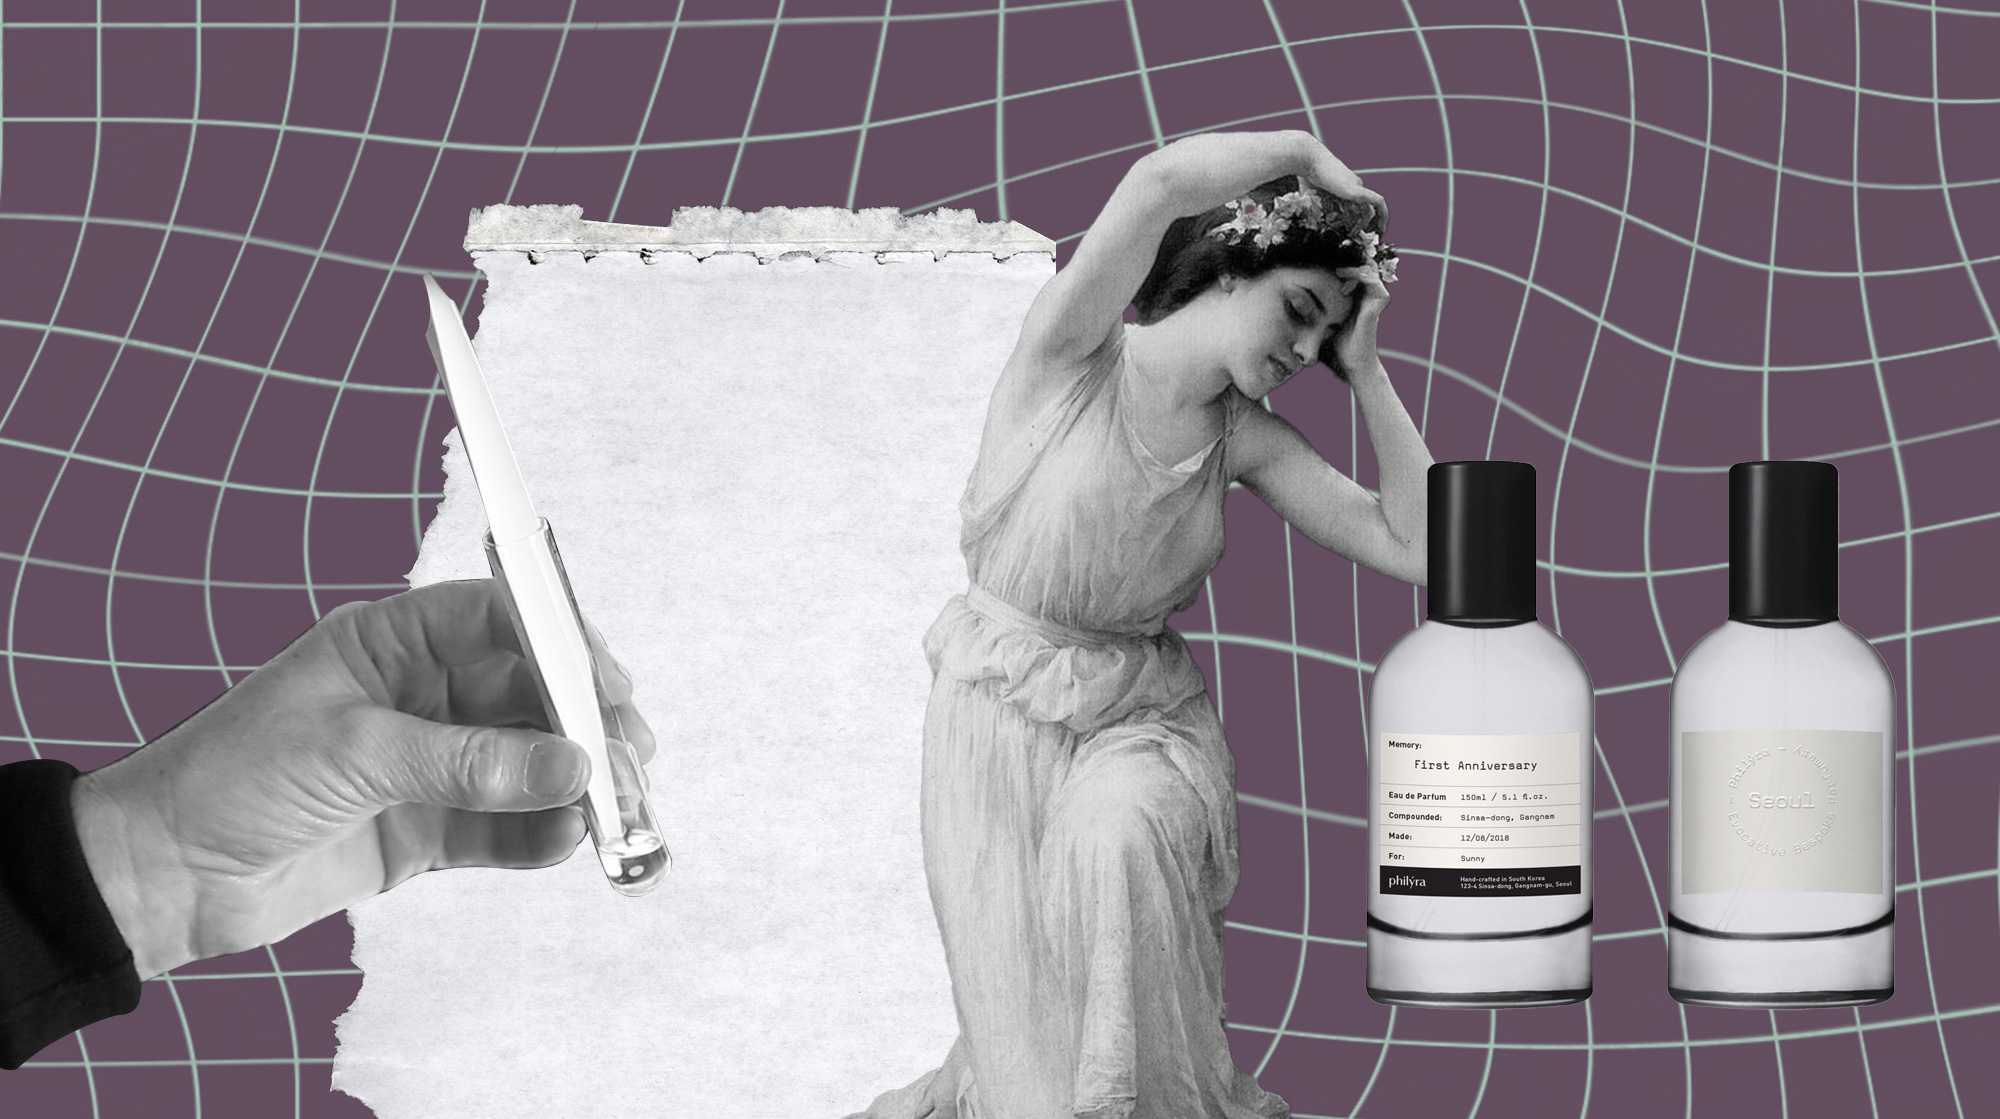 The Pioneers of AI Perfume Design. Artwork courtesy of Constanza Coscia, an IM alumna and graphic designer